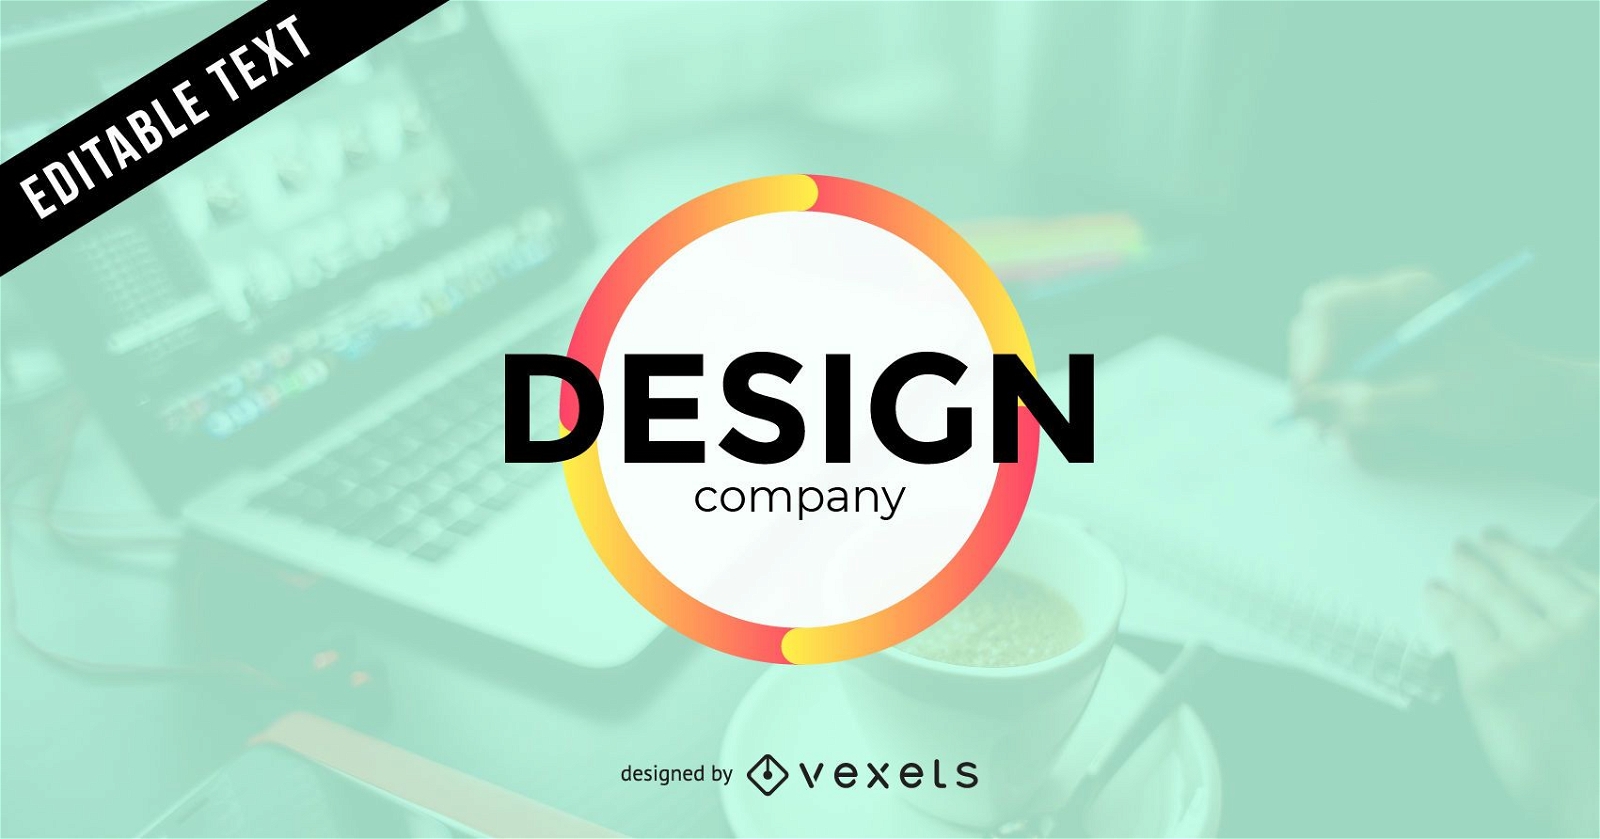 Design company logo